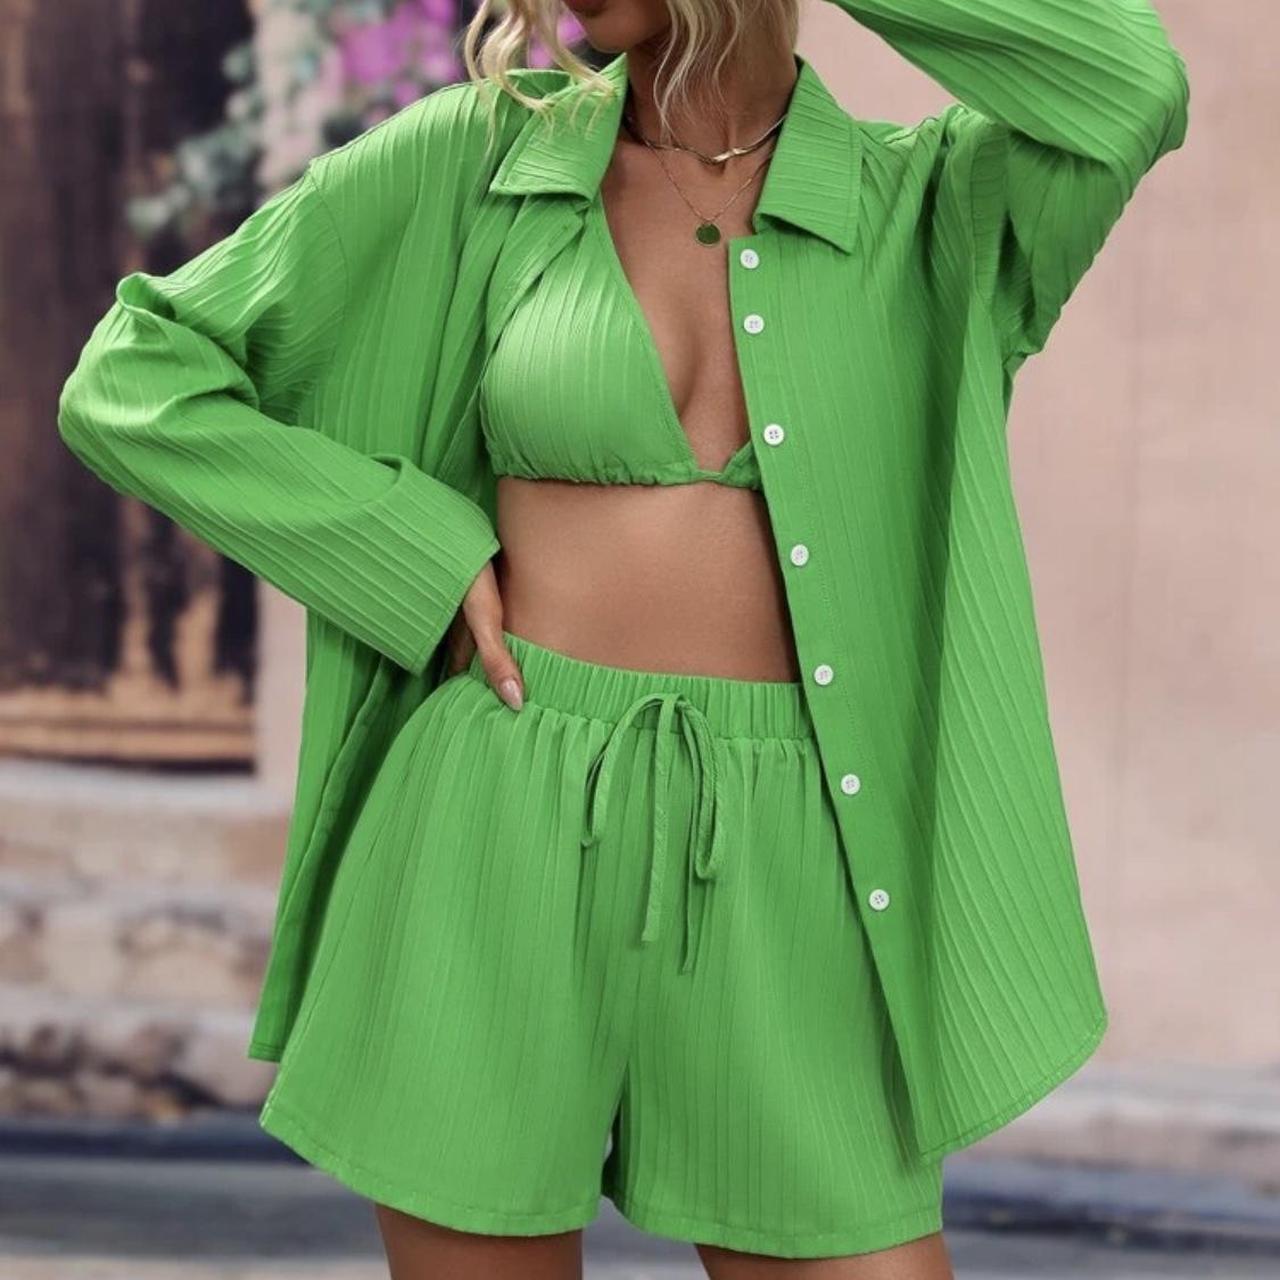 SHEIN Women's Green Suit | Depop